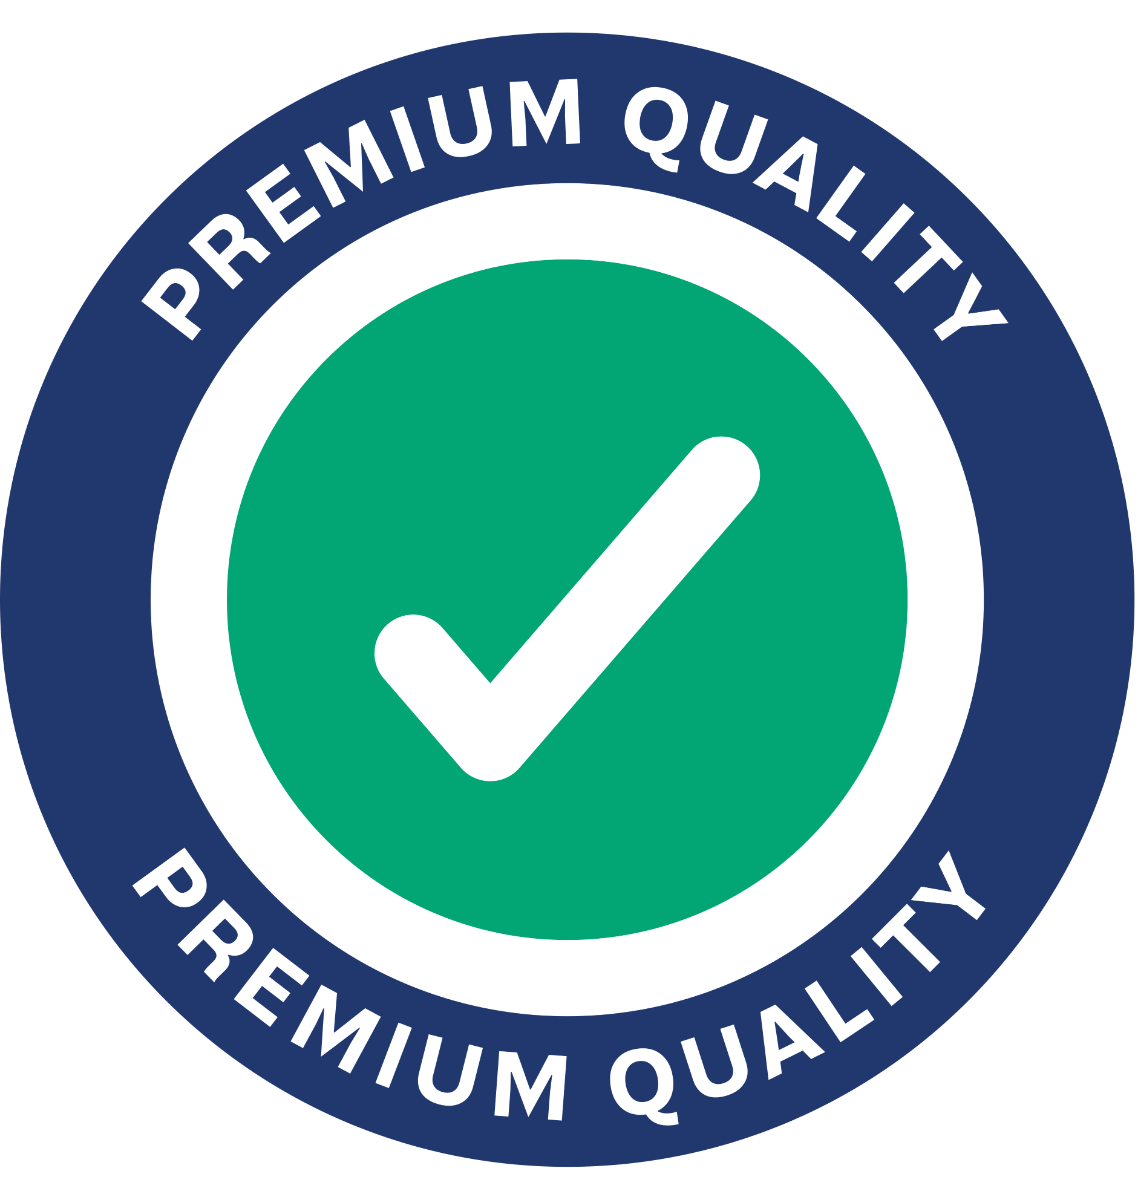 Premium-QUALITY-COLORED